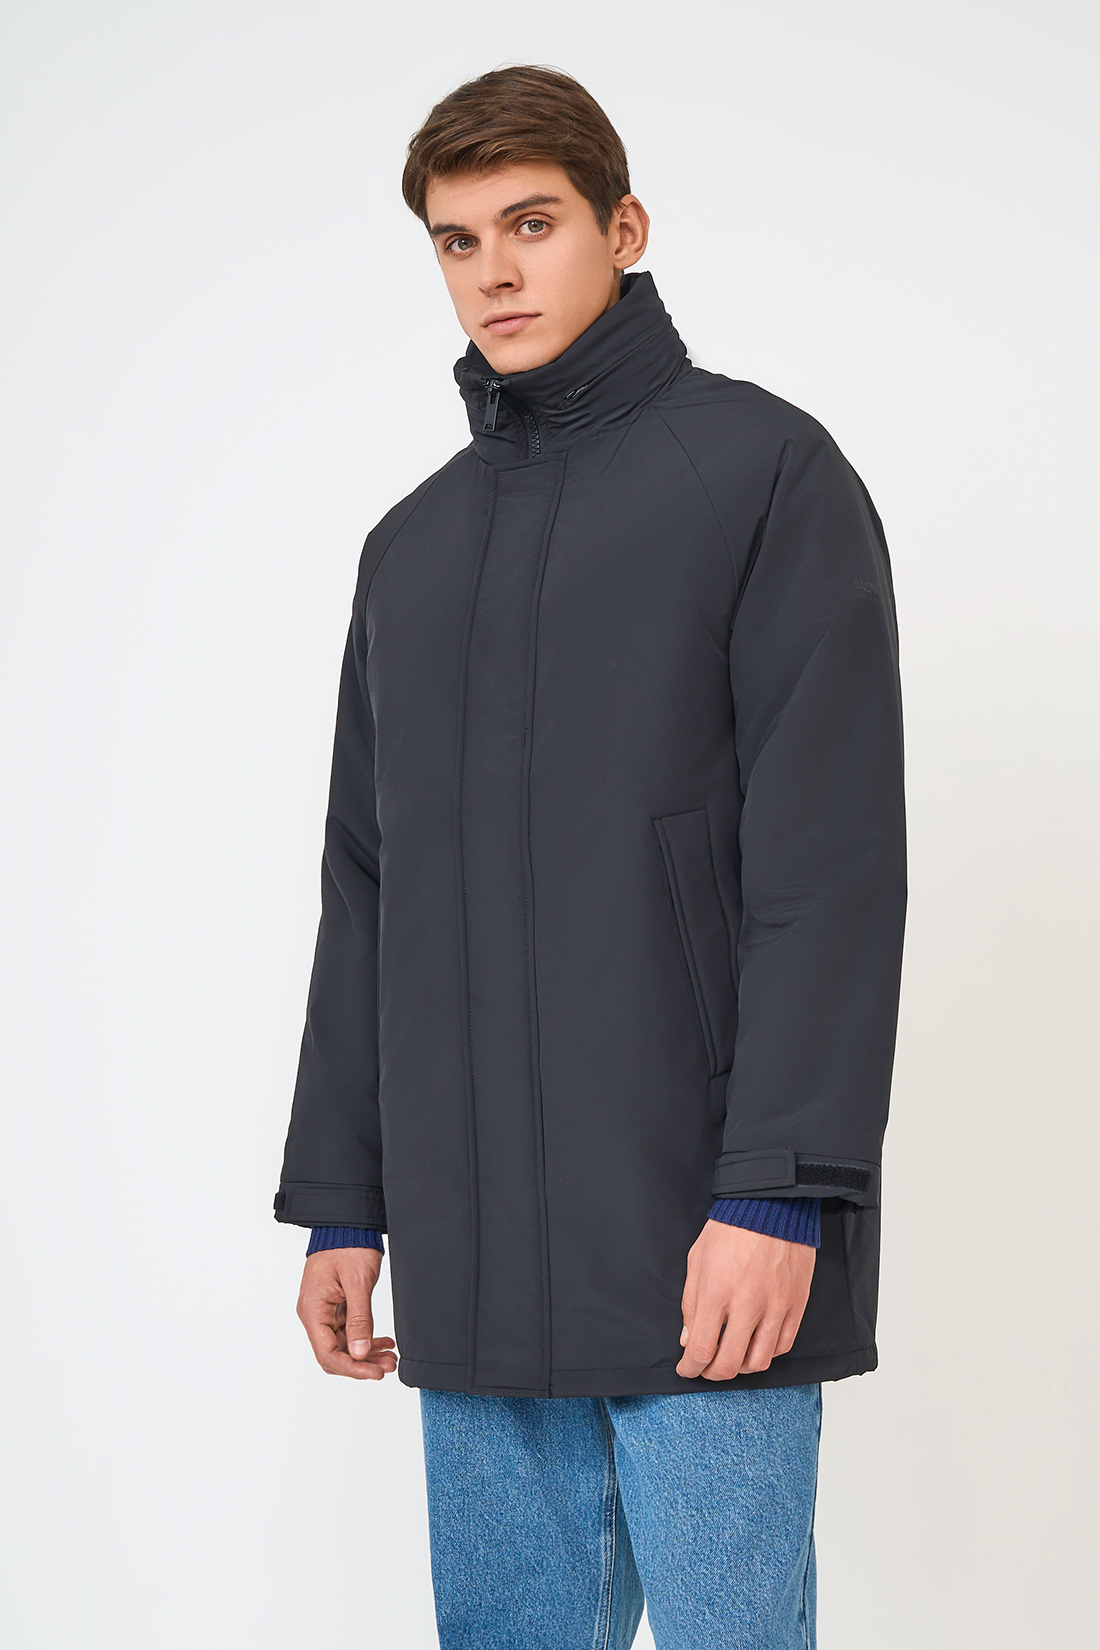 Зимняя куртка мужская Baon B5323515 черная M